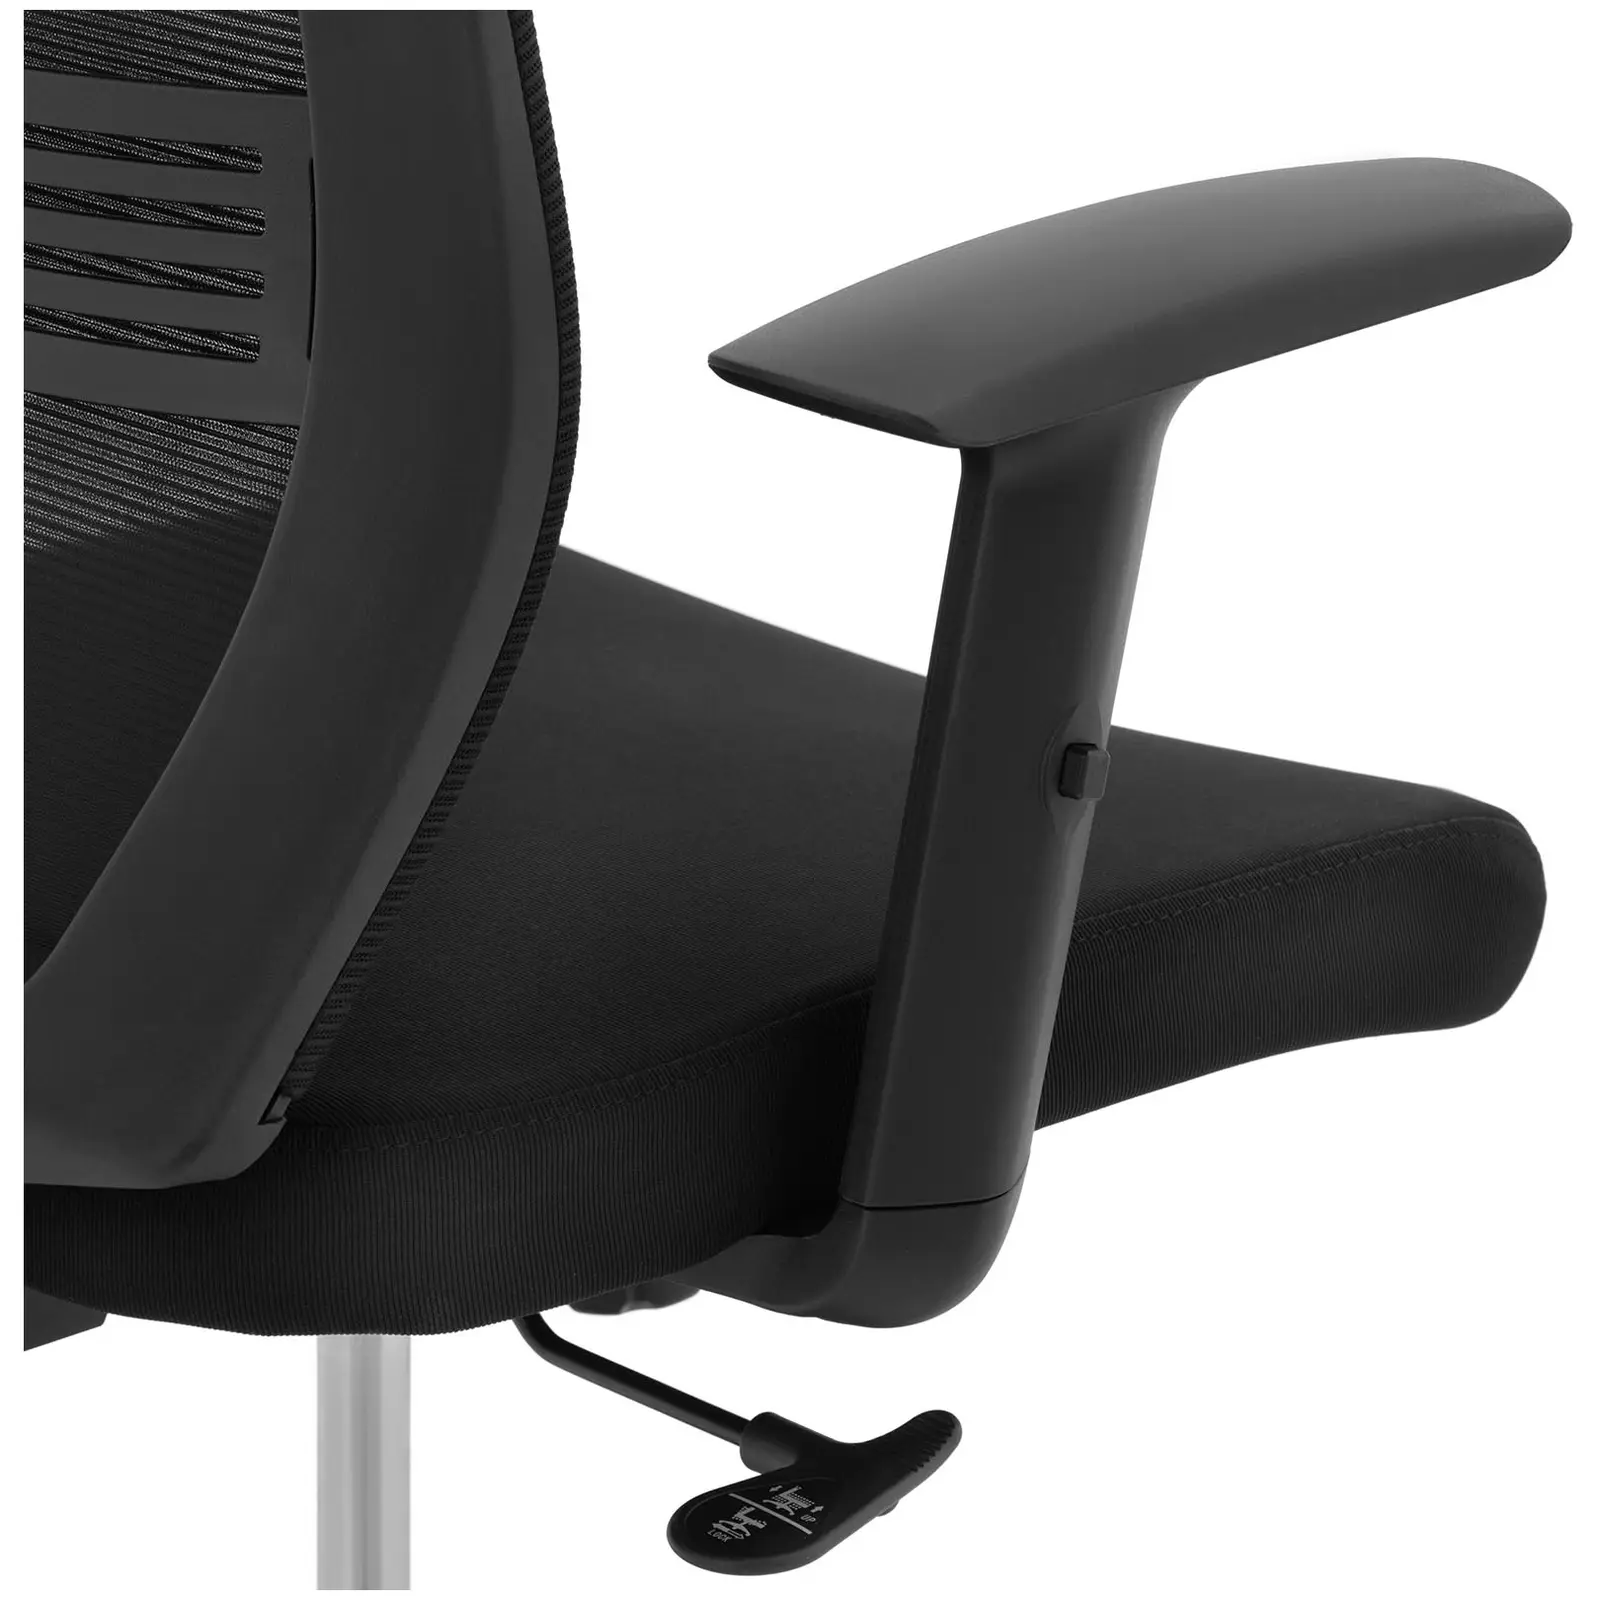 Bürostuhl - Netzrücken - Kopfstütze - 50 x 61 cm Sitz - bis 150 kg - schwarz